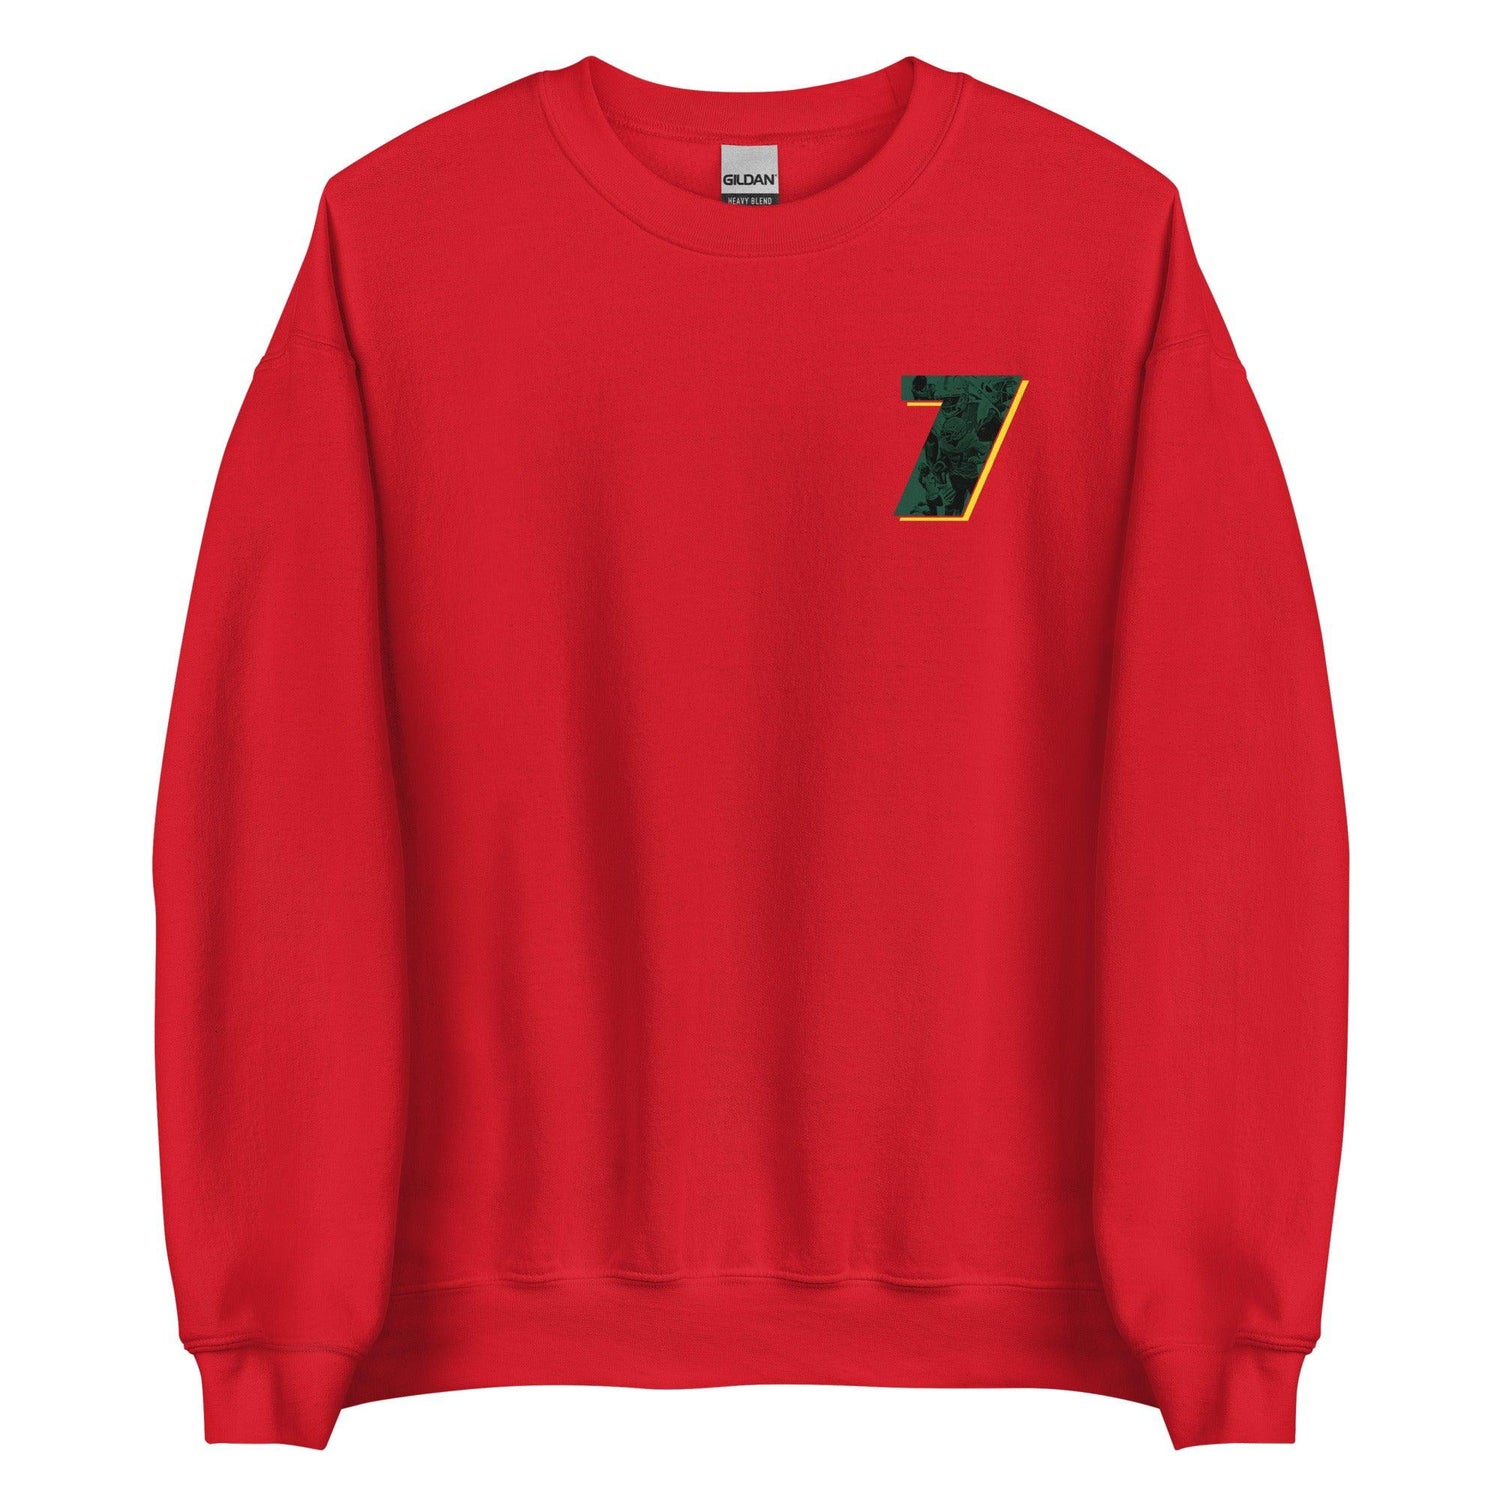 Seven McGee "7" Sweatshirt - Fan Arch